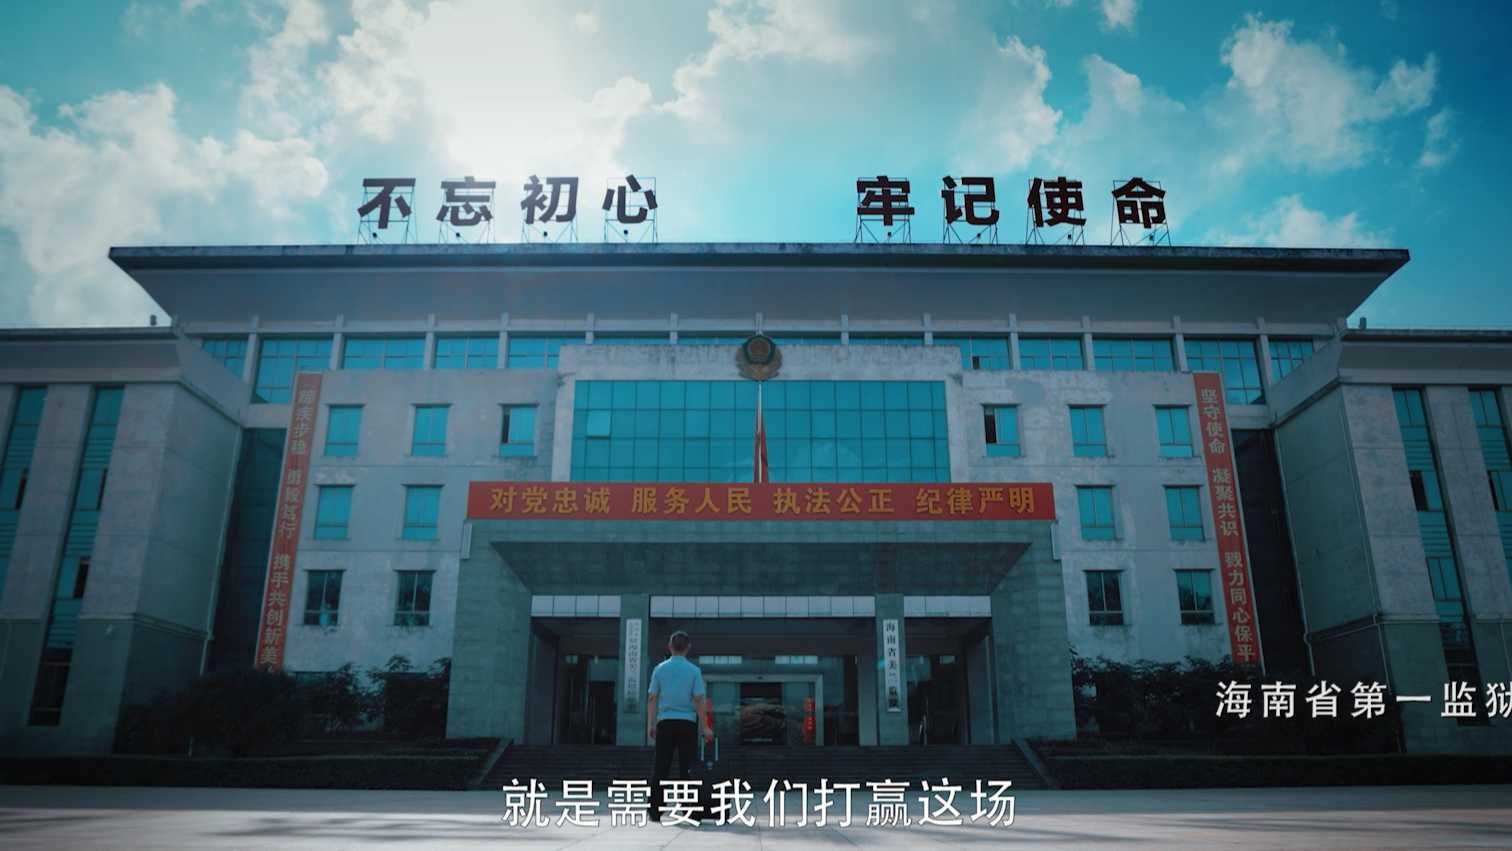 海南省司法厅抗疫主题微电影《无声战疫》